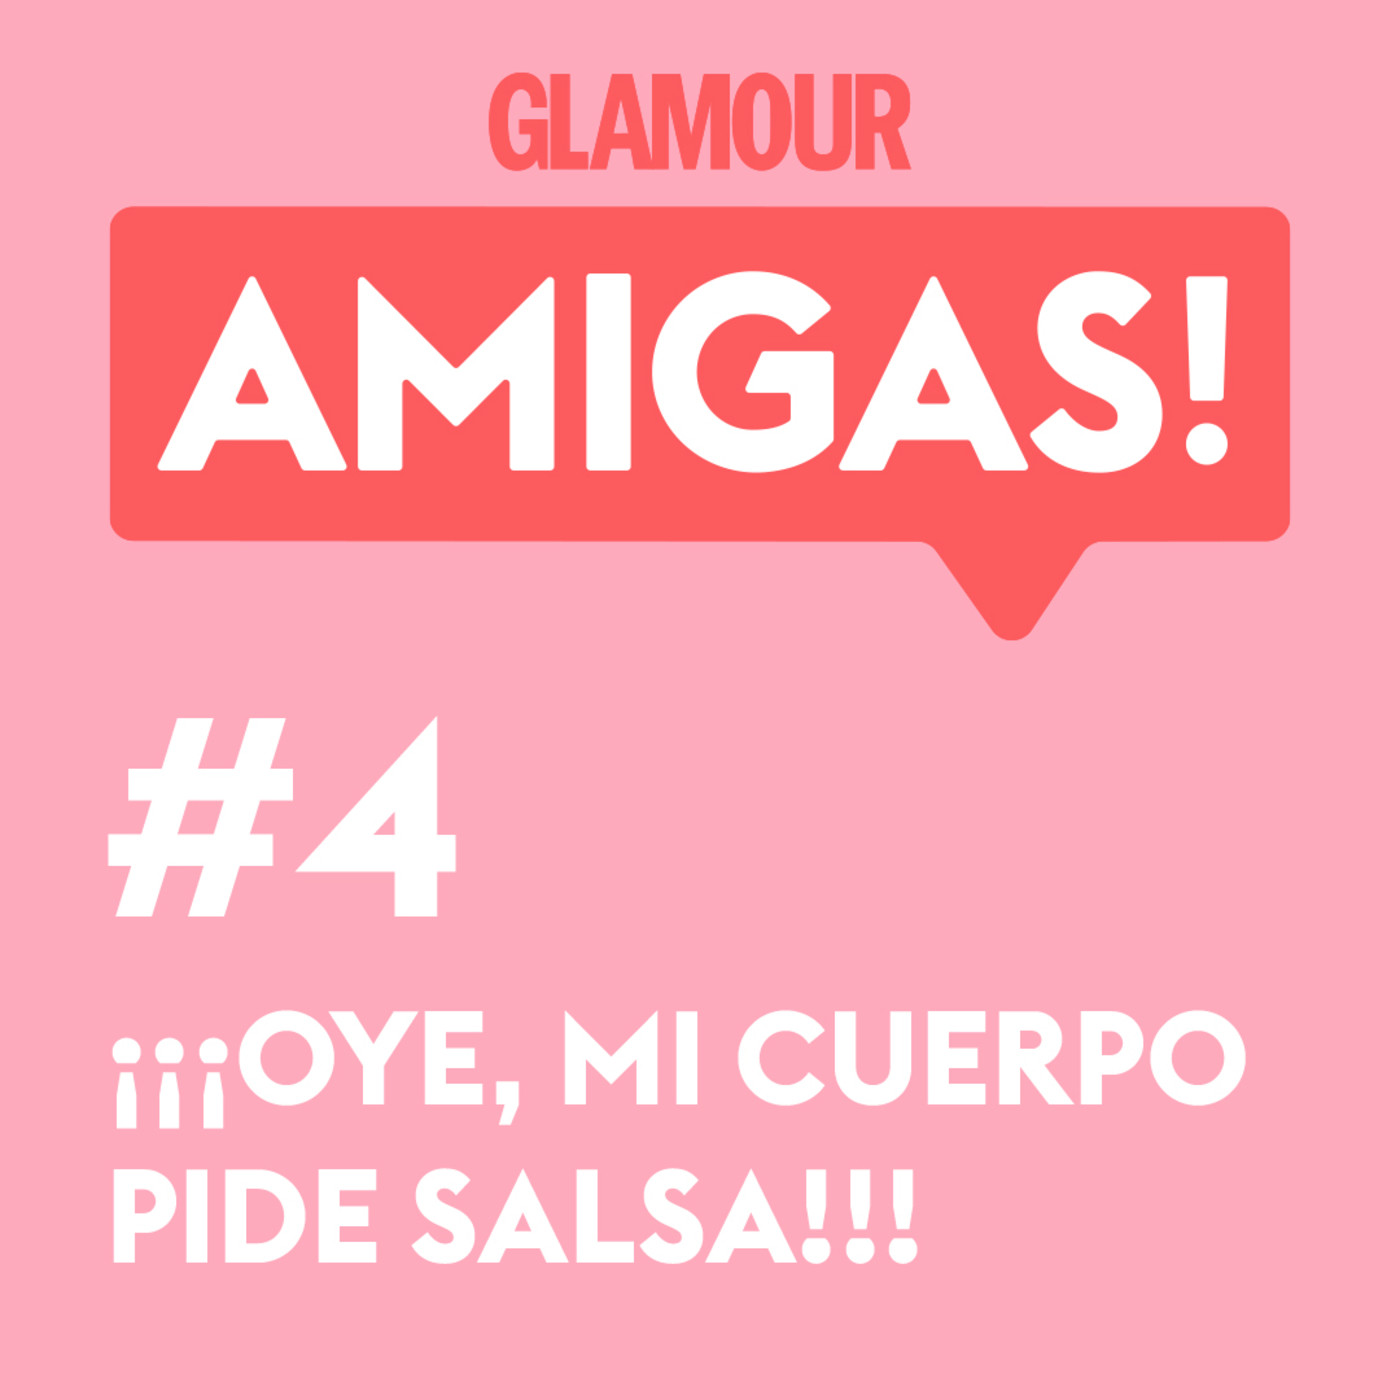 Glamour Amigas! #4: Oye, mi cuerpo pide salsa. Con Delfina Mieville.